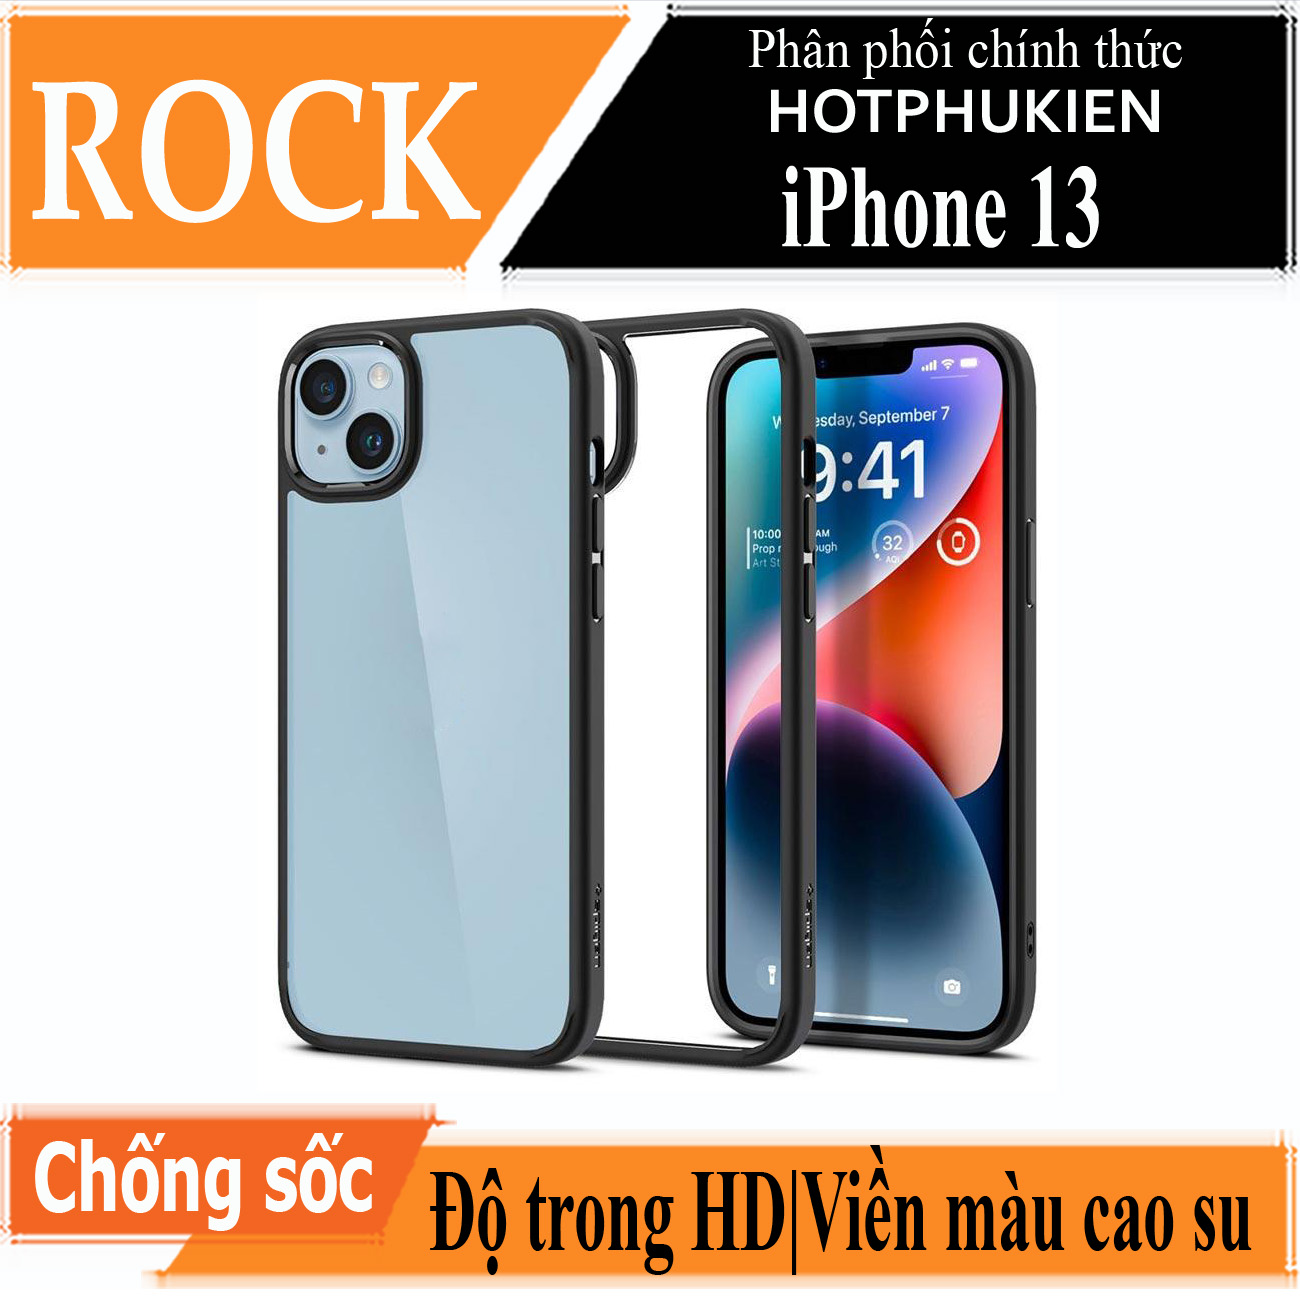 Ốp lưng chống sốc viền cao su cho iPhone 13 (6.1 inch) Hiệu Rock hybrid Protective Case